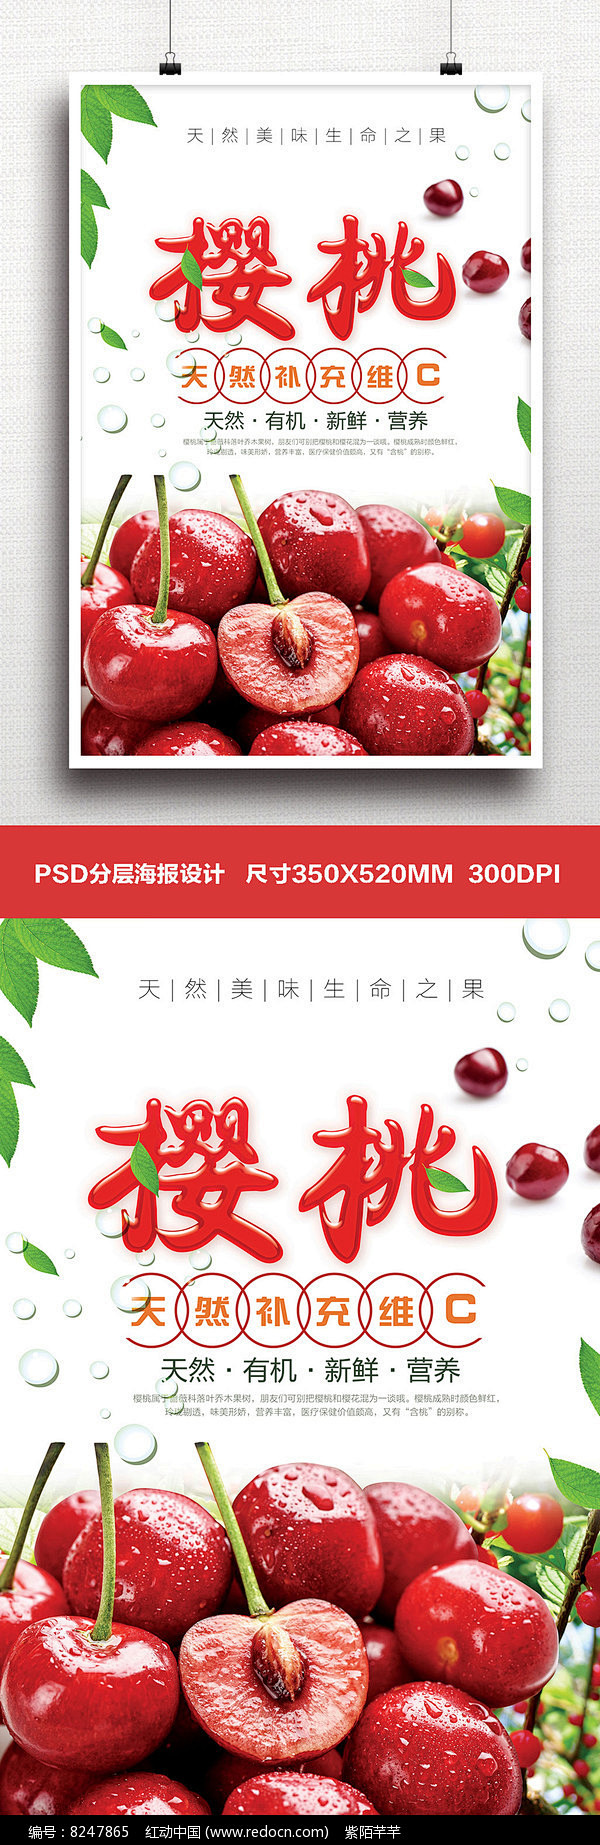 大气时尚清新红色水果樱桃宣传海报图片